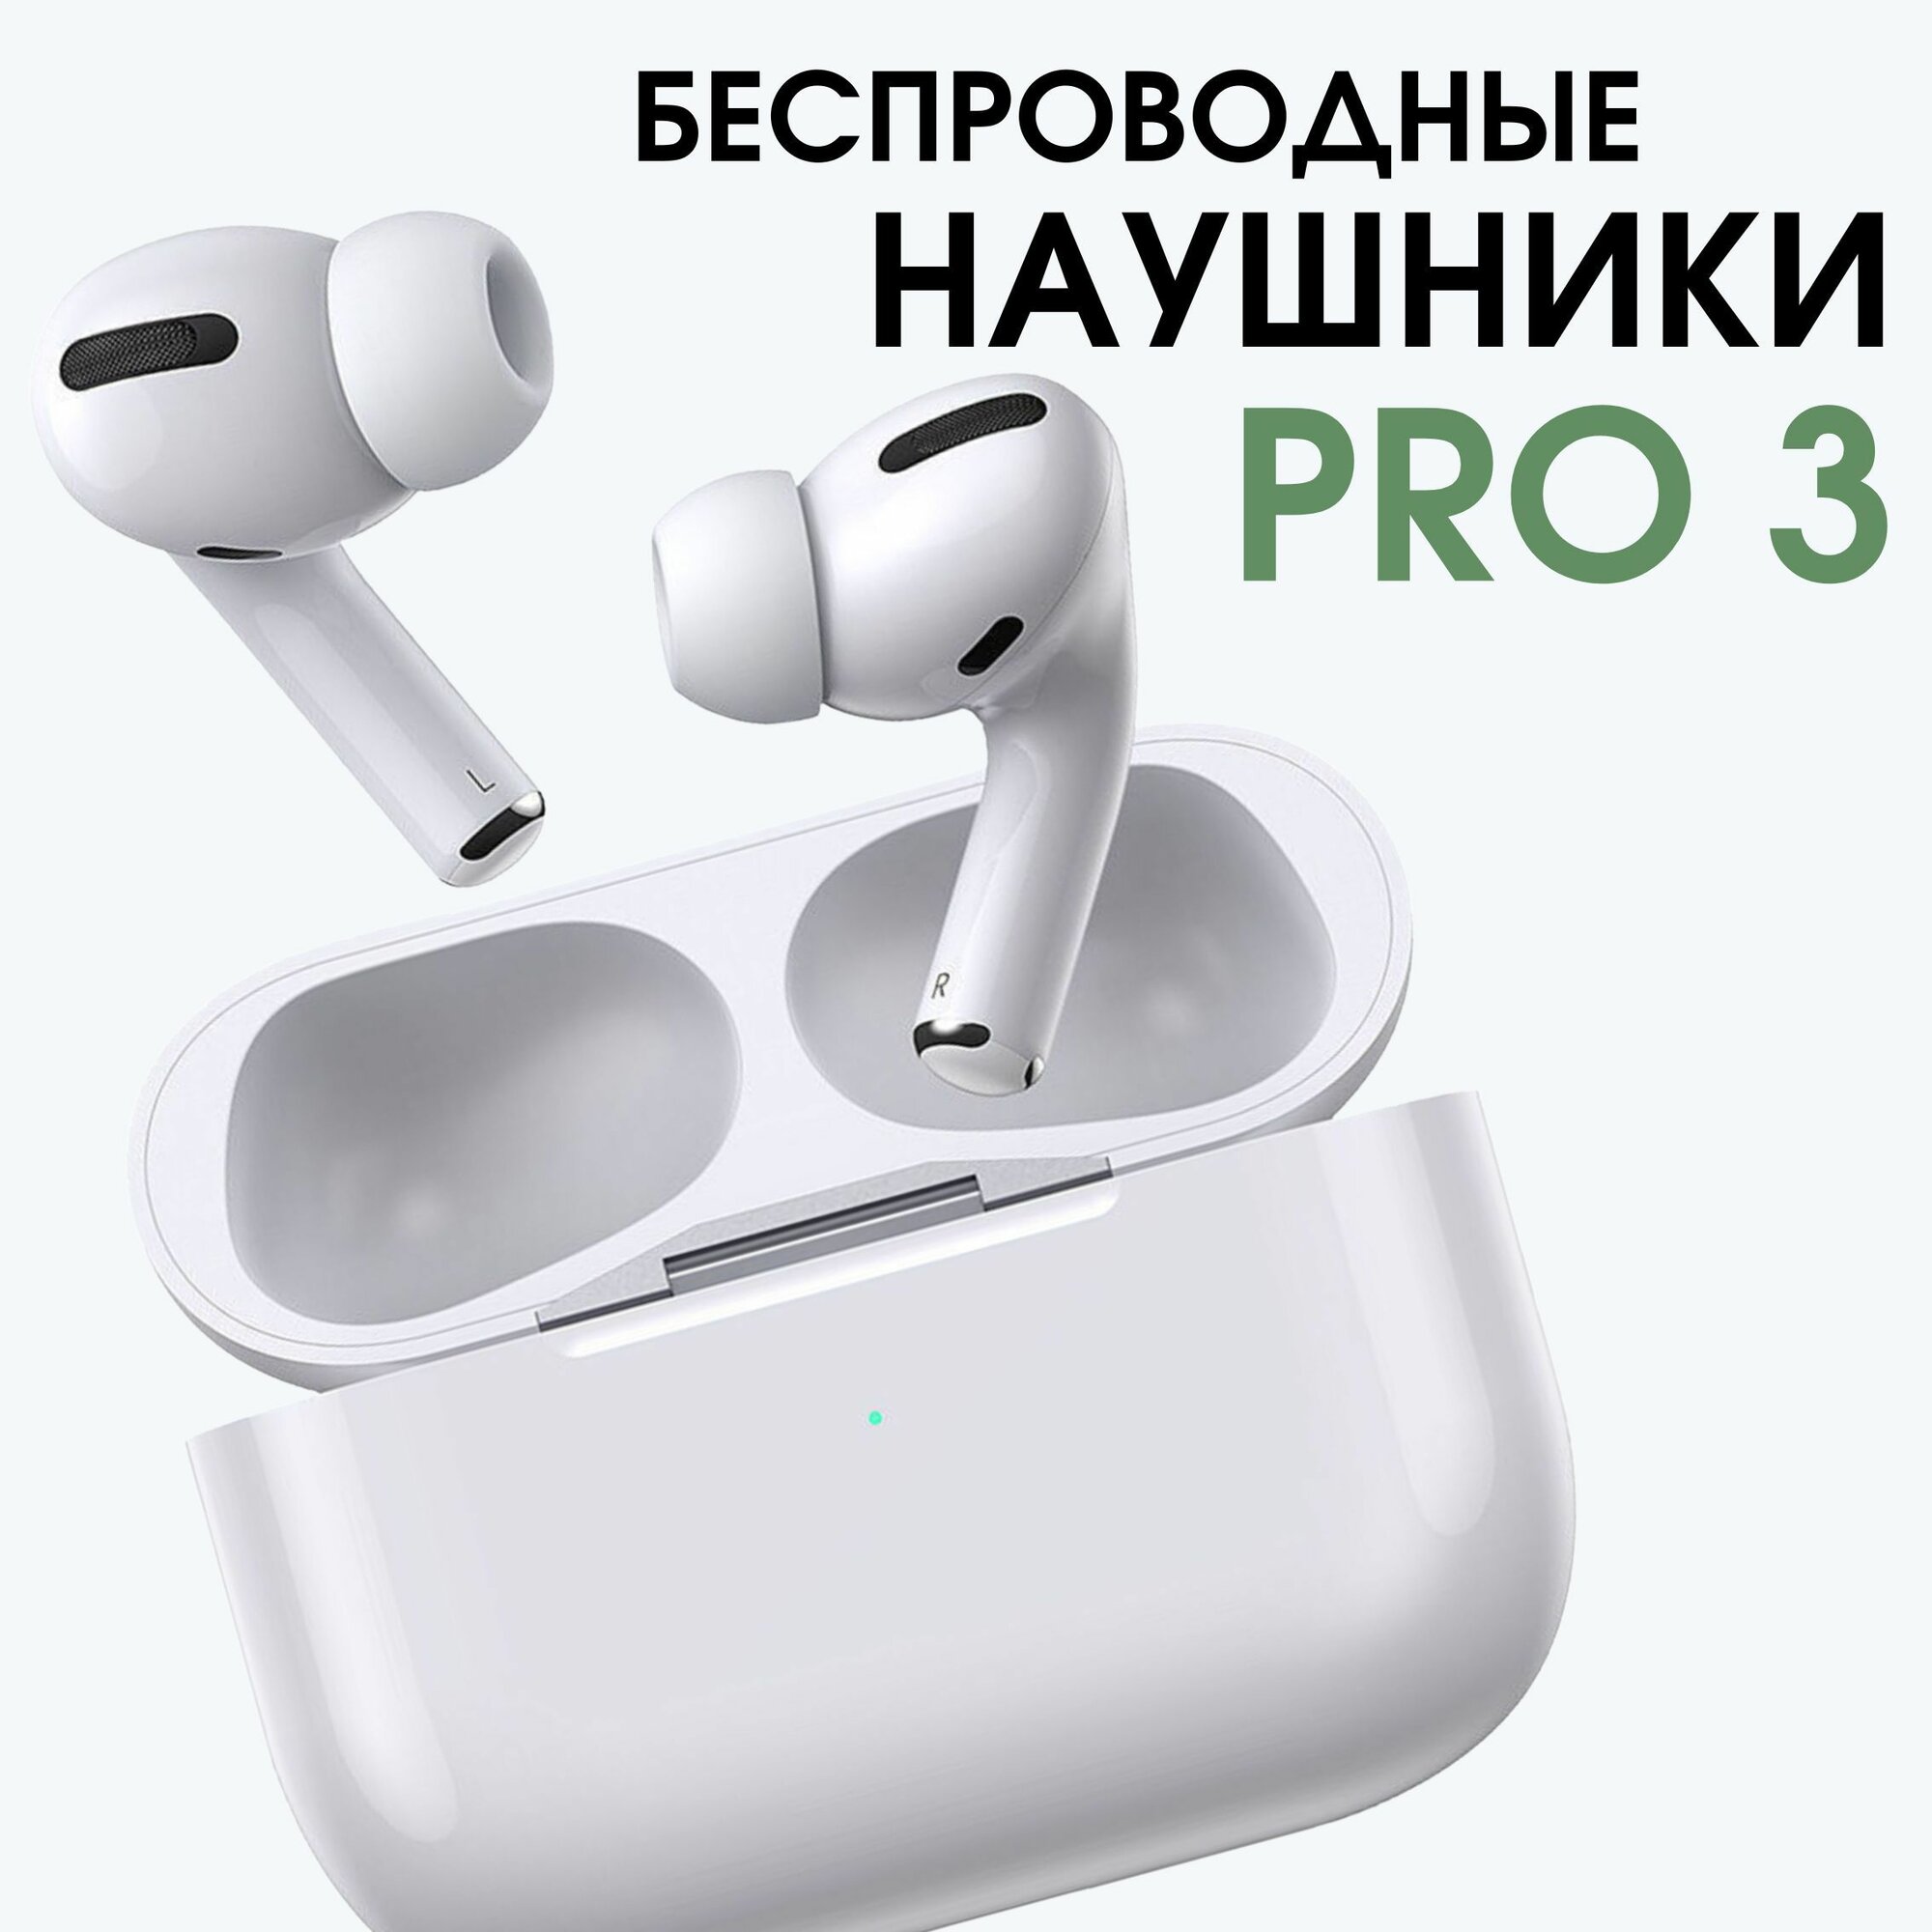 Наушники беспроводные PRO 3 TWS для телефона, белые (блютуз, bluetooth, вкладыши, с микрофоном и активным шумоподавлением)